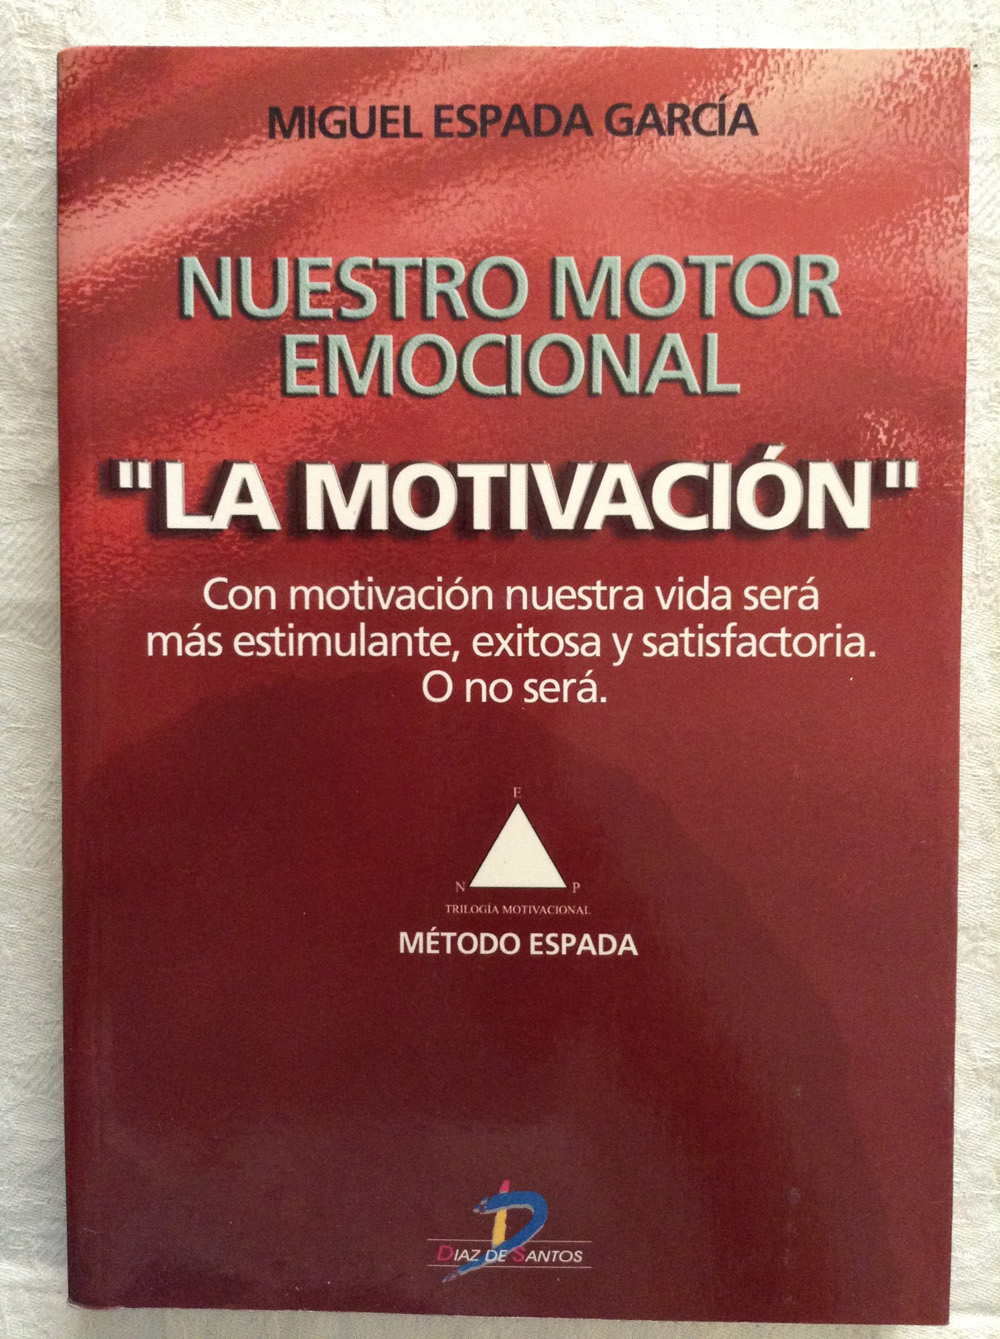 Nuestro motor emocional "La motivación"